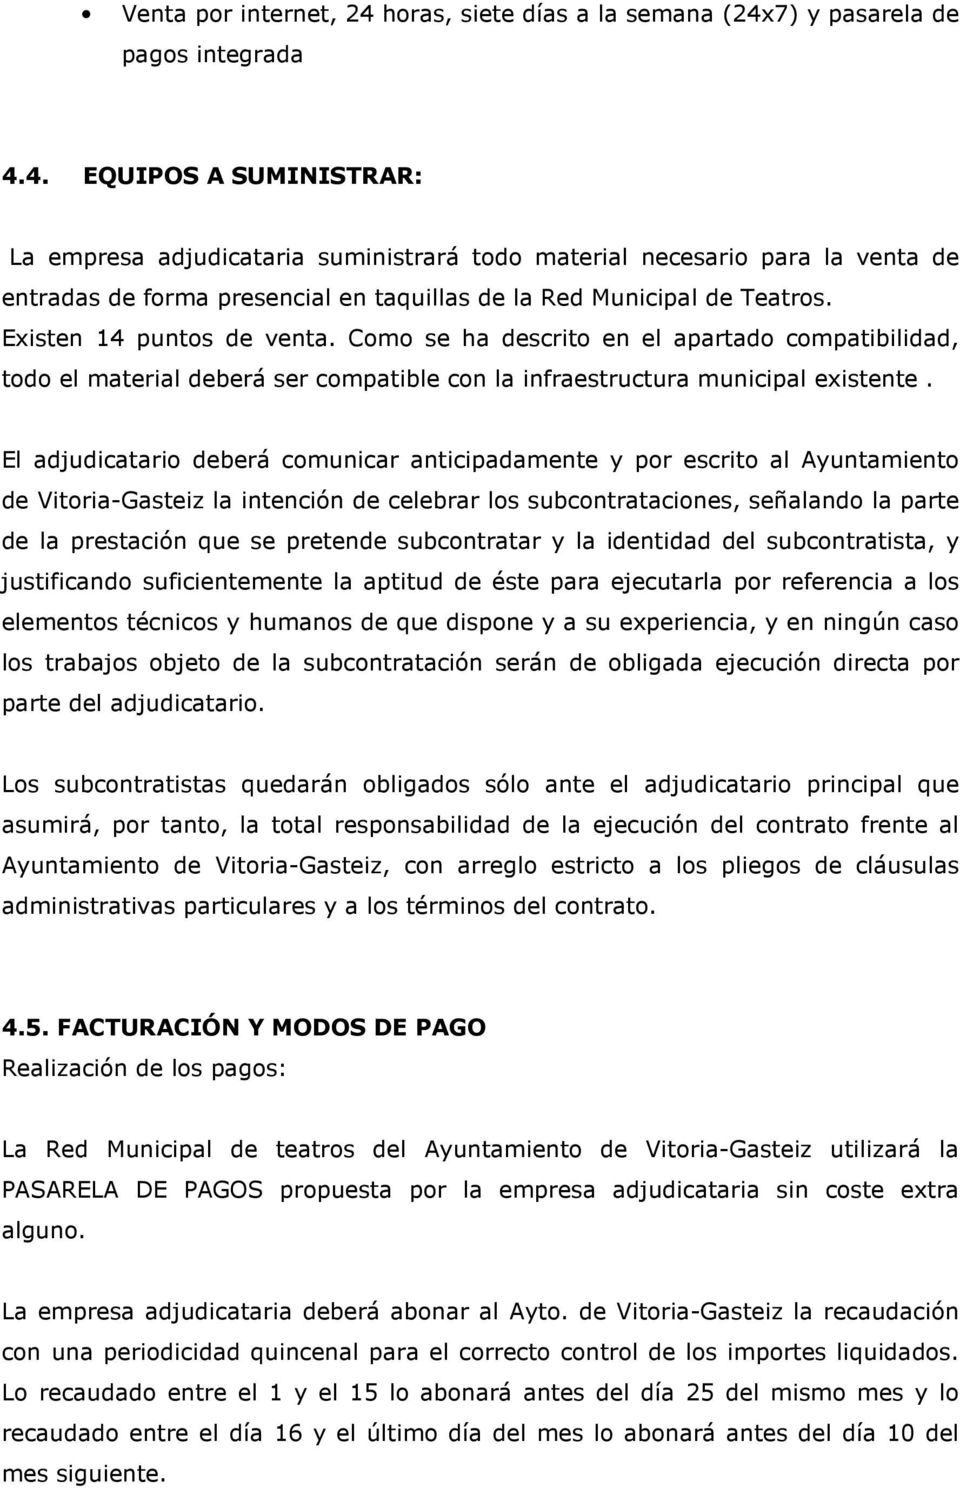 El adjudicatario deberá comunicar anticipadamente y por escrito al Ayuntamiento de Vitoria-Gasteiz la intención de celebrar los subcontrataciones, señalando la parte de la prestación que se pretende